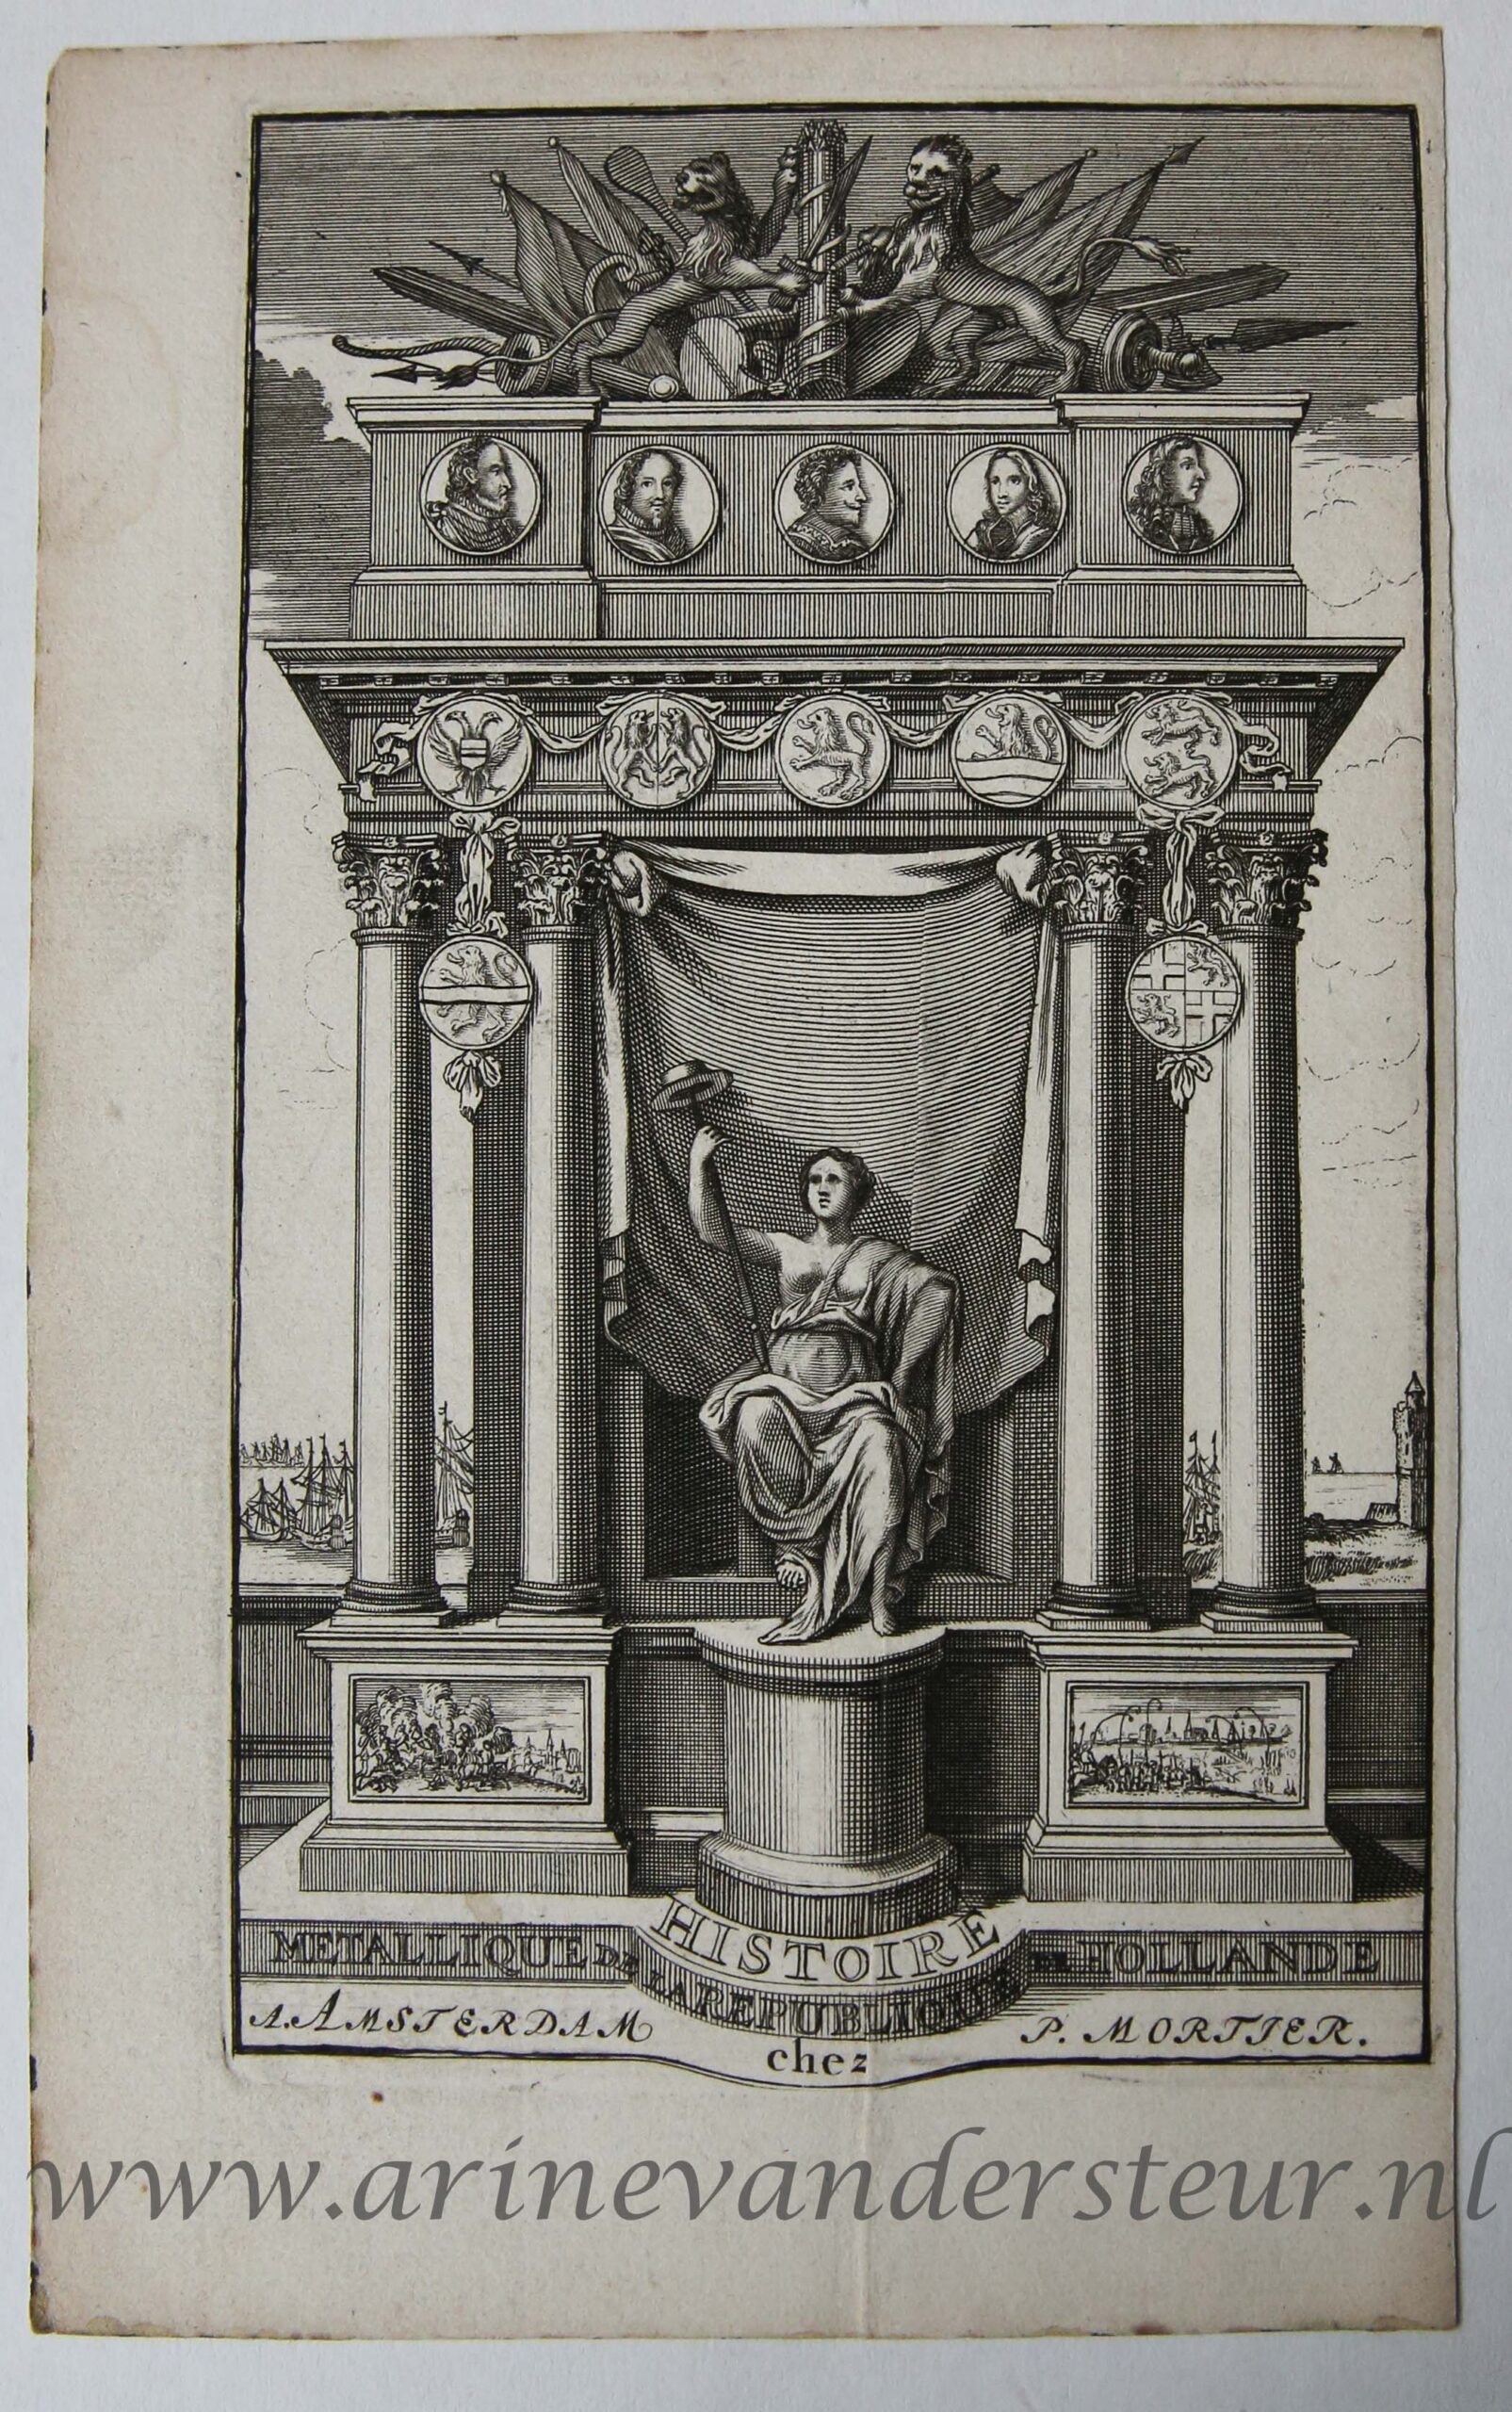 [Antique title page, 1688] Historie Metallique de la republique de Hollande, published 1688, 1 p.